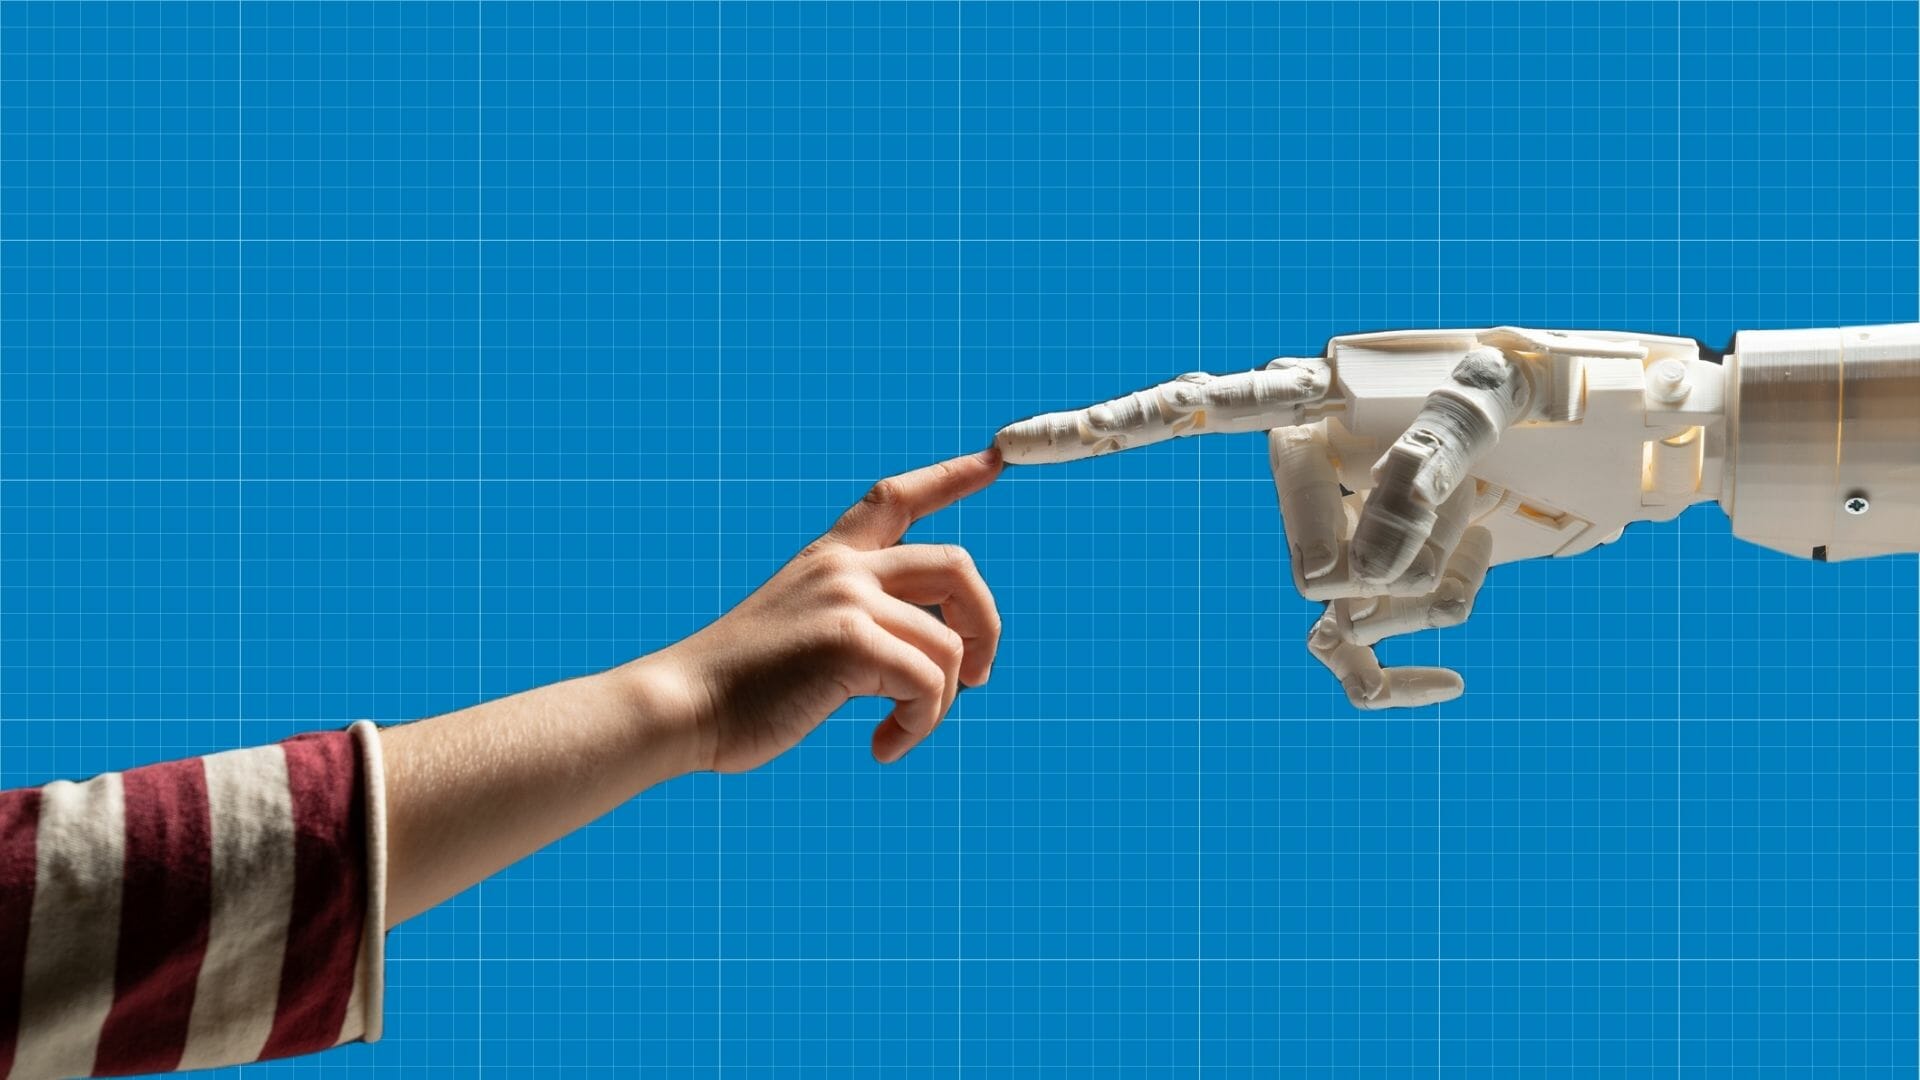 هل يمكن أن يساعد الذكاء الإصطناعي في إنقاذ حياة البشر؟ أحد روبوتات الدردشة يجيب watanserb.com